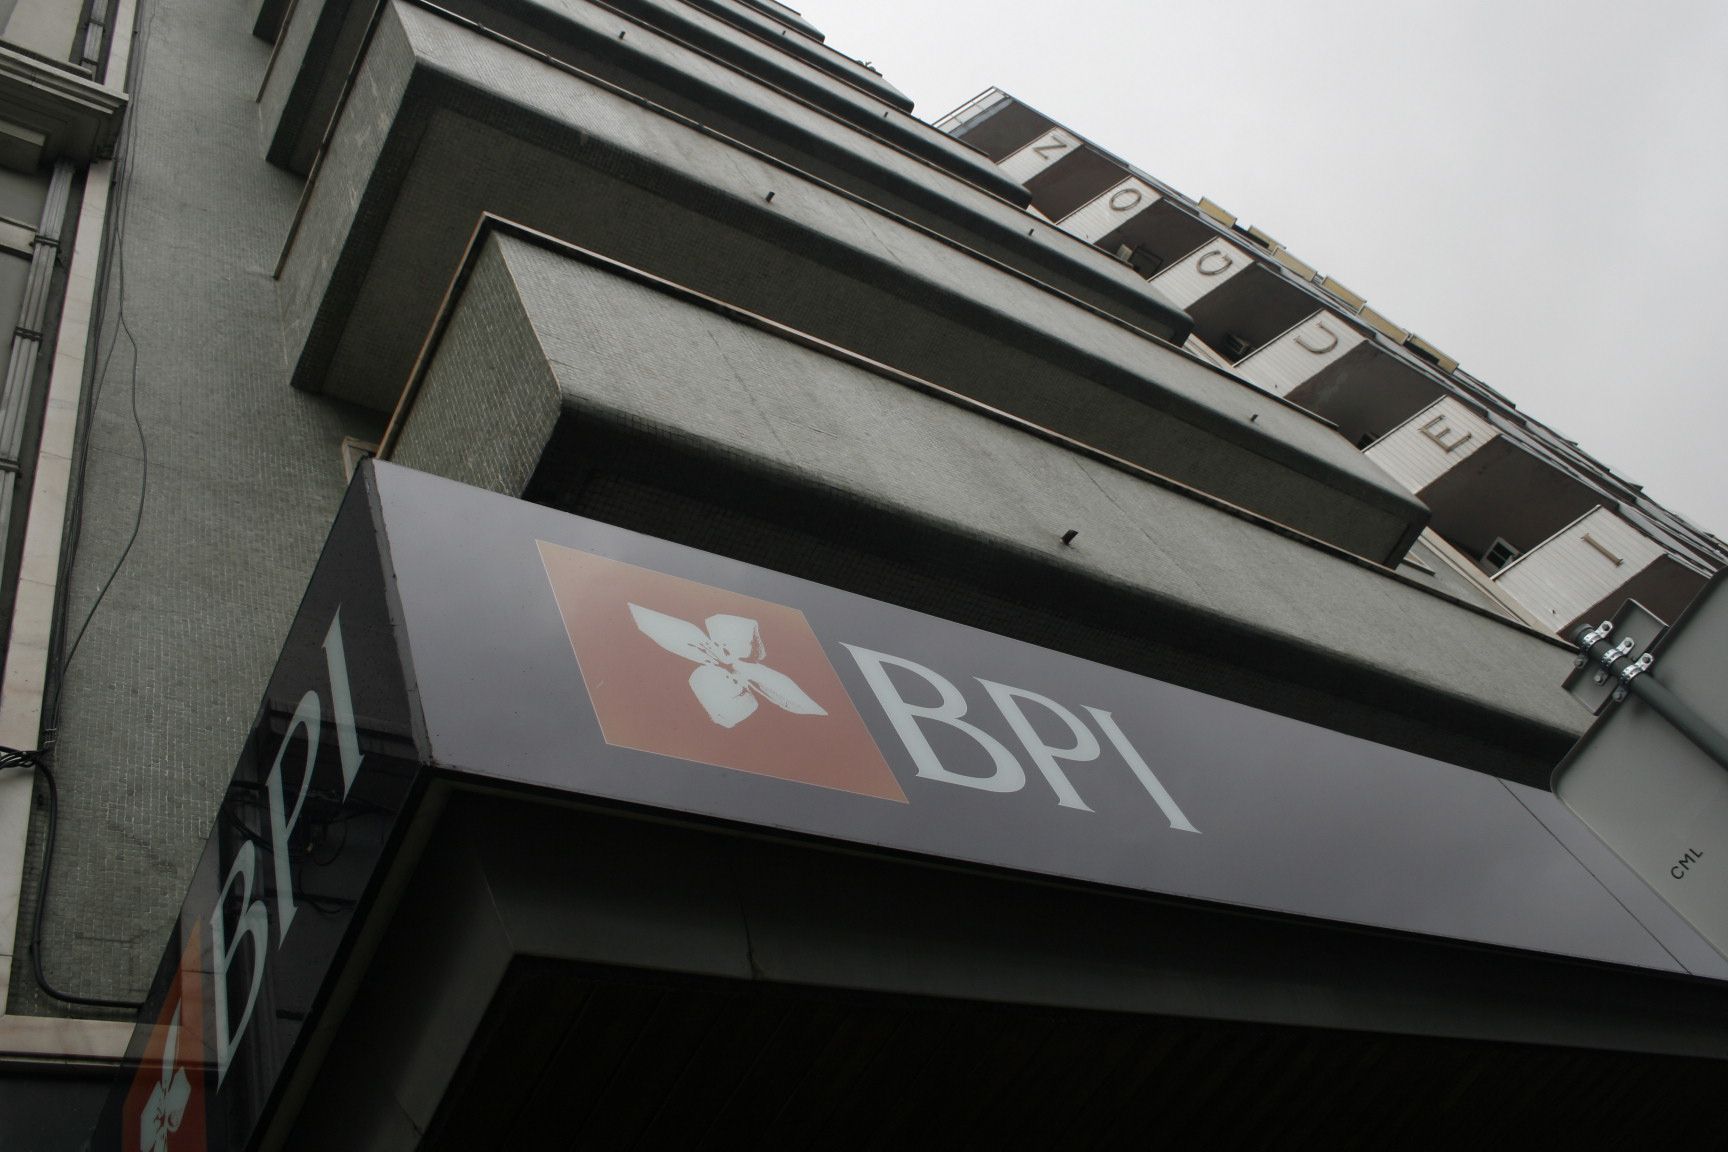 Lucro do BPI caiu 68% para 42,6 milhões no 1.º semestre